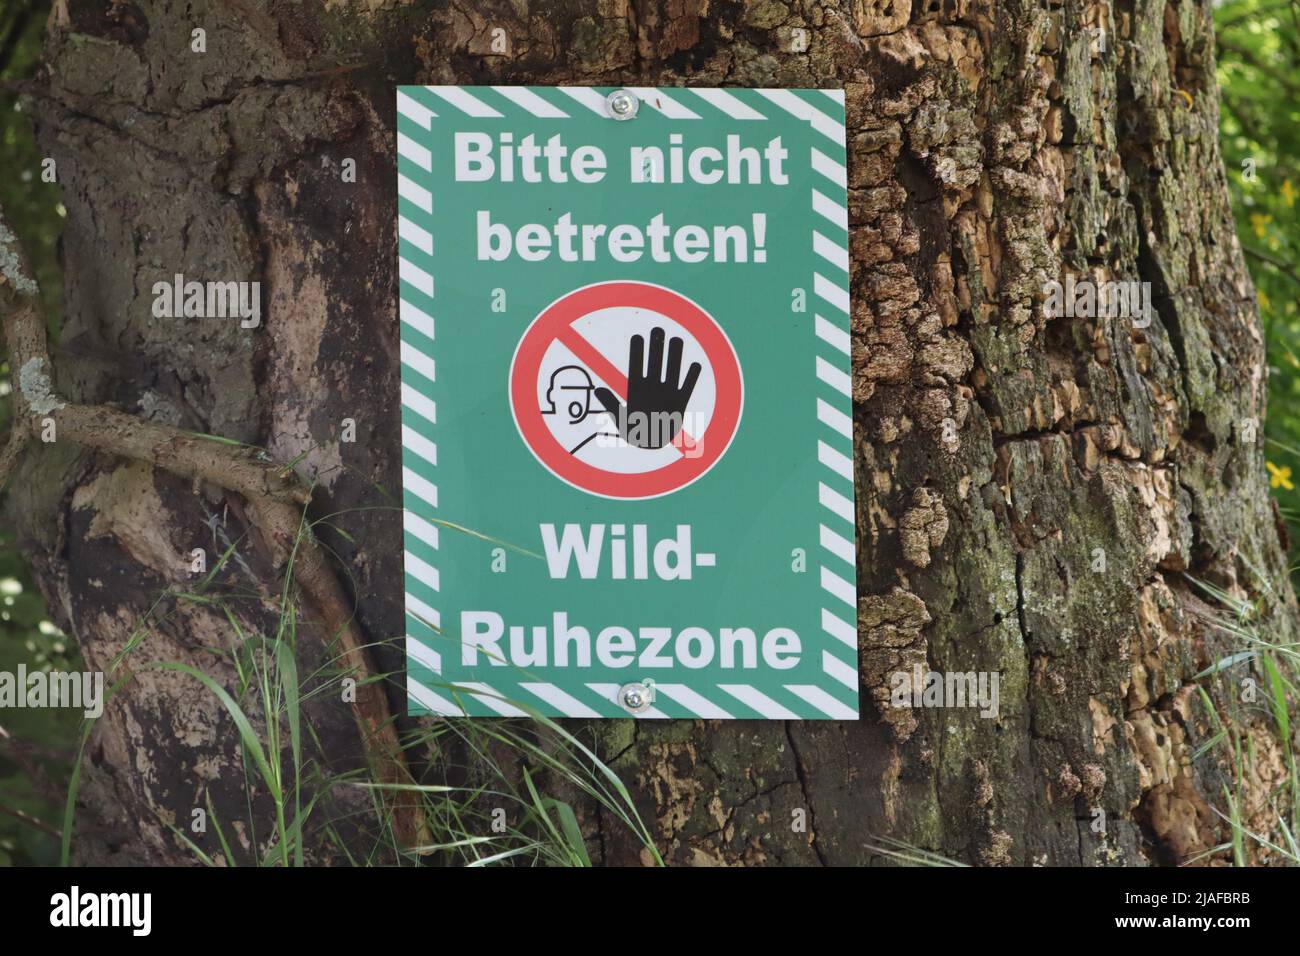 Panneau d'information pour le comportement dans la forêt, tenir à l'extérieur, aire de repos pour les animaux sauvages, Allemagne Banque D'Images